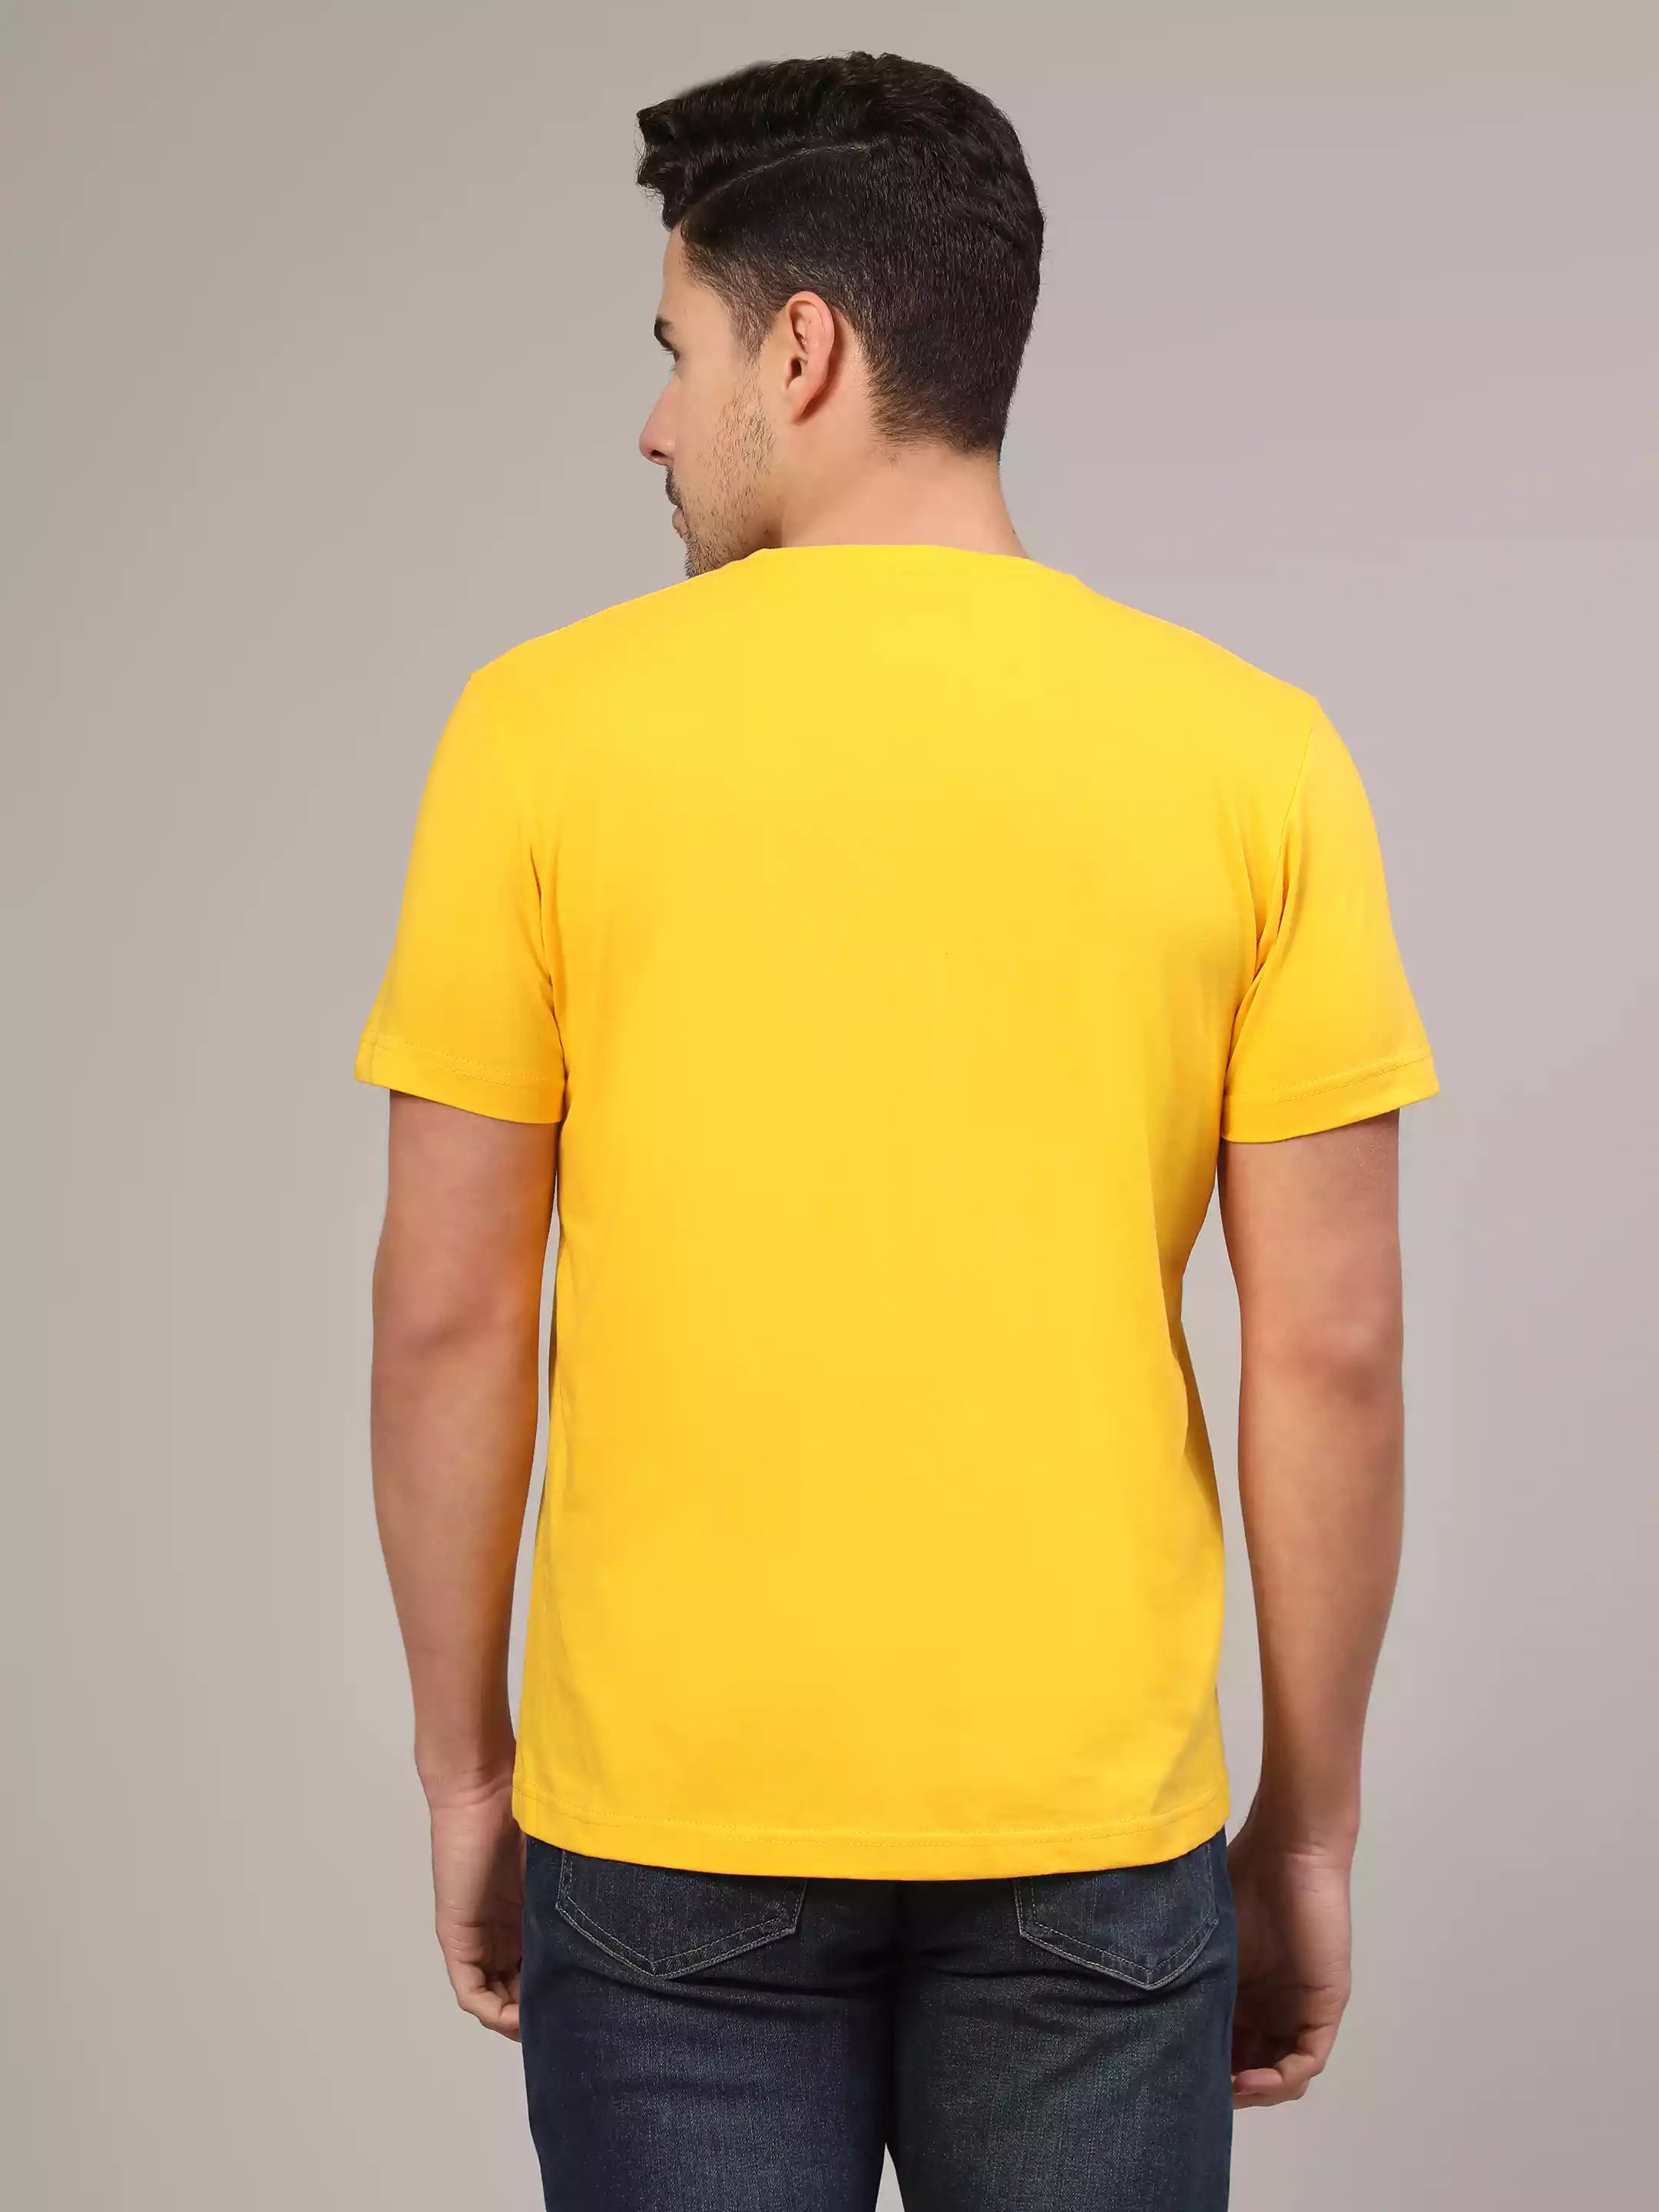 Overthinker - Sukhiaatma Unisex Graphic Printed Yellow T-shirt